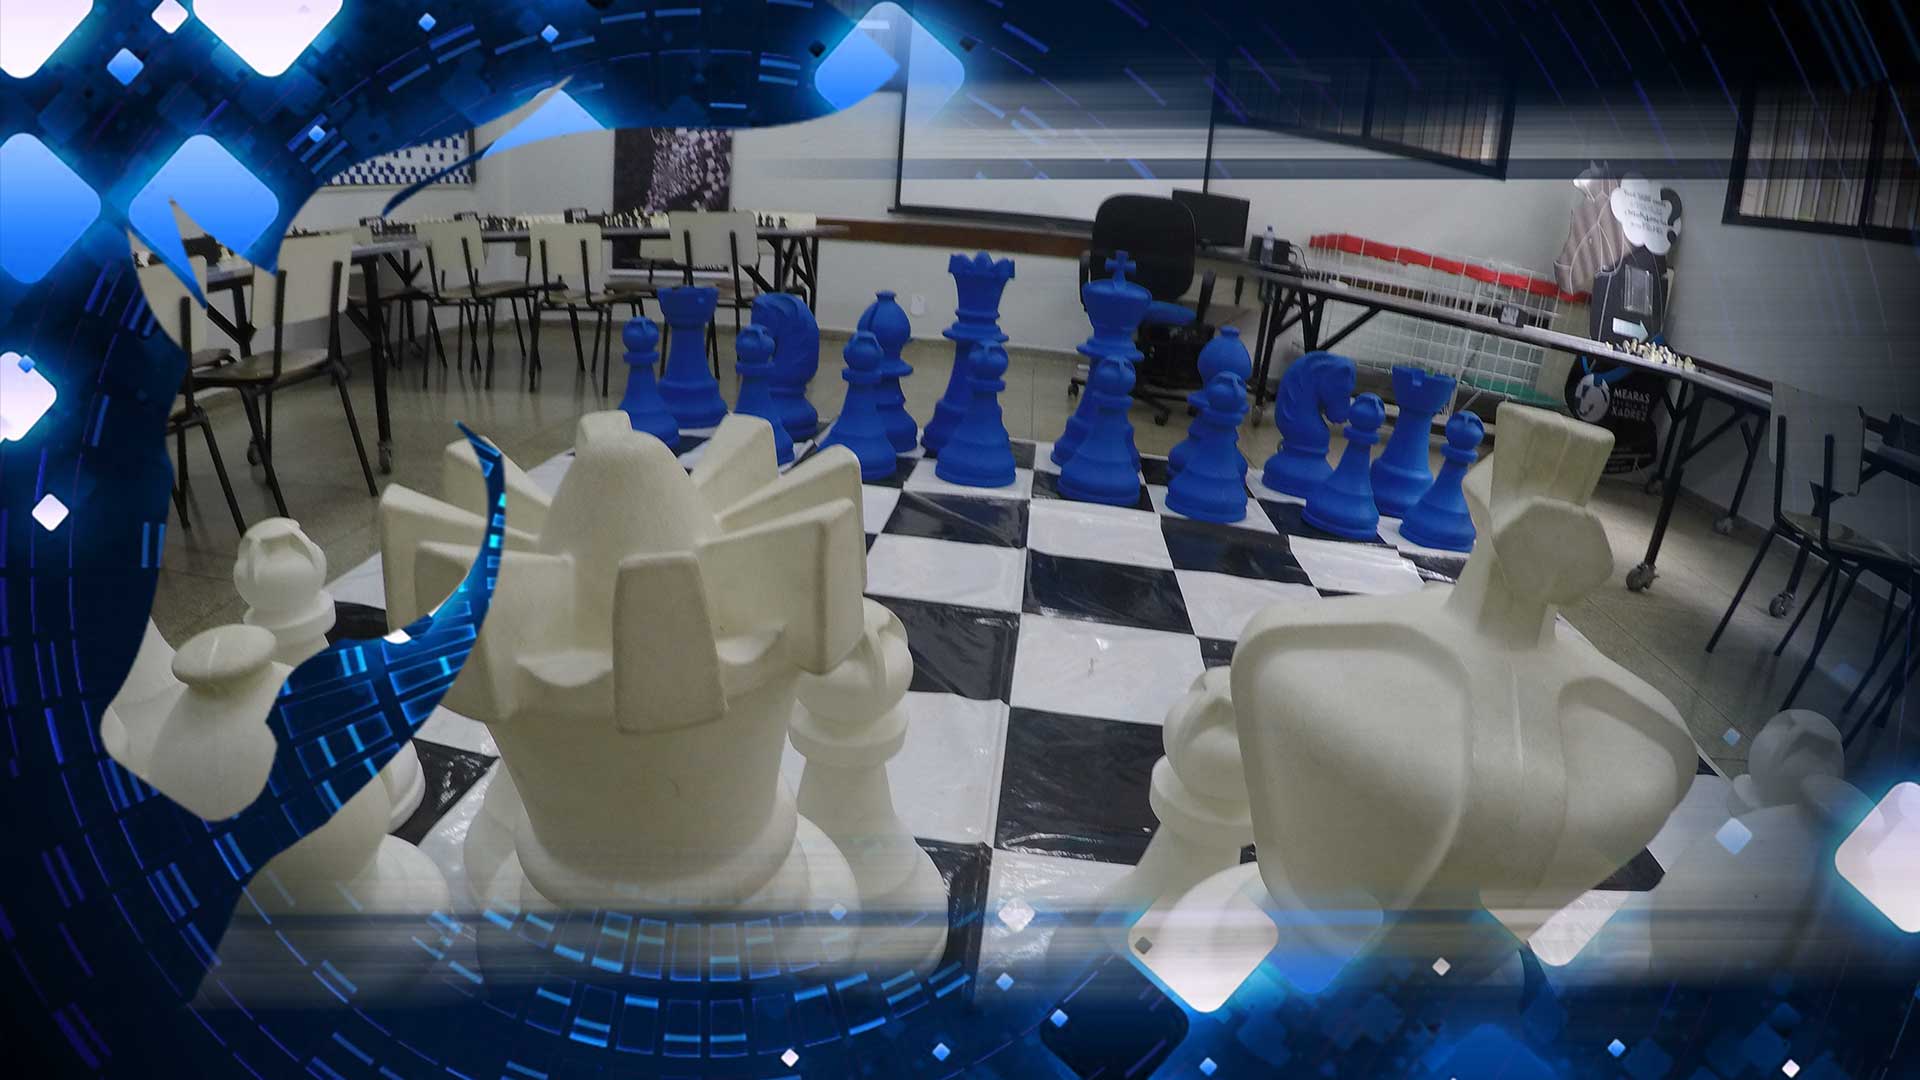 Mearas escola de xadrez